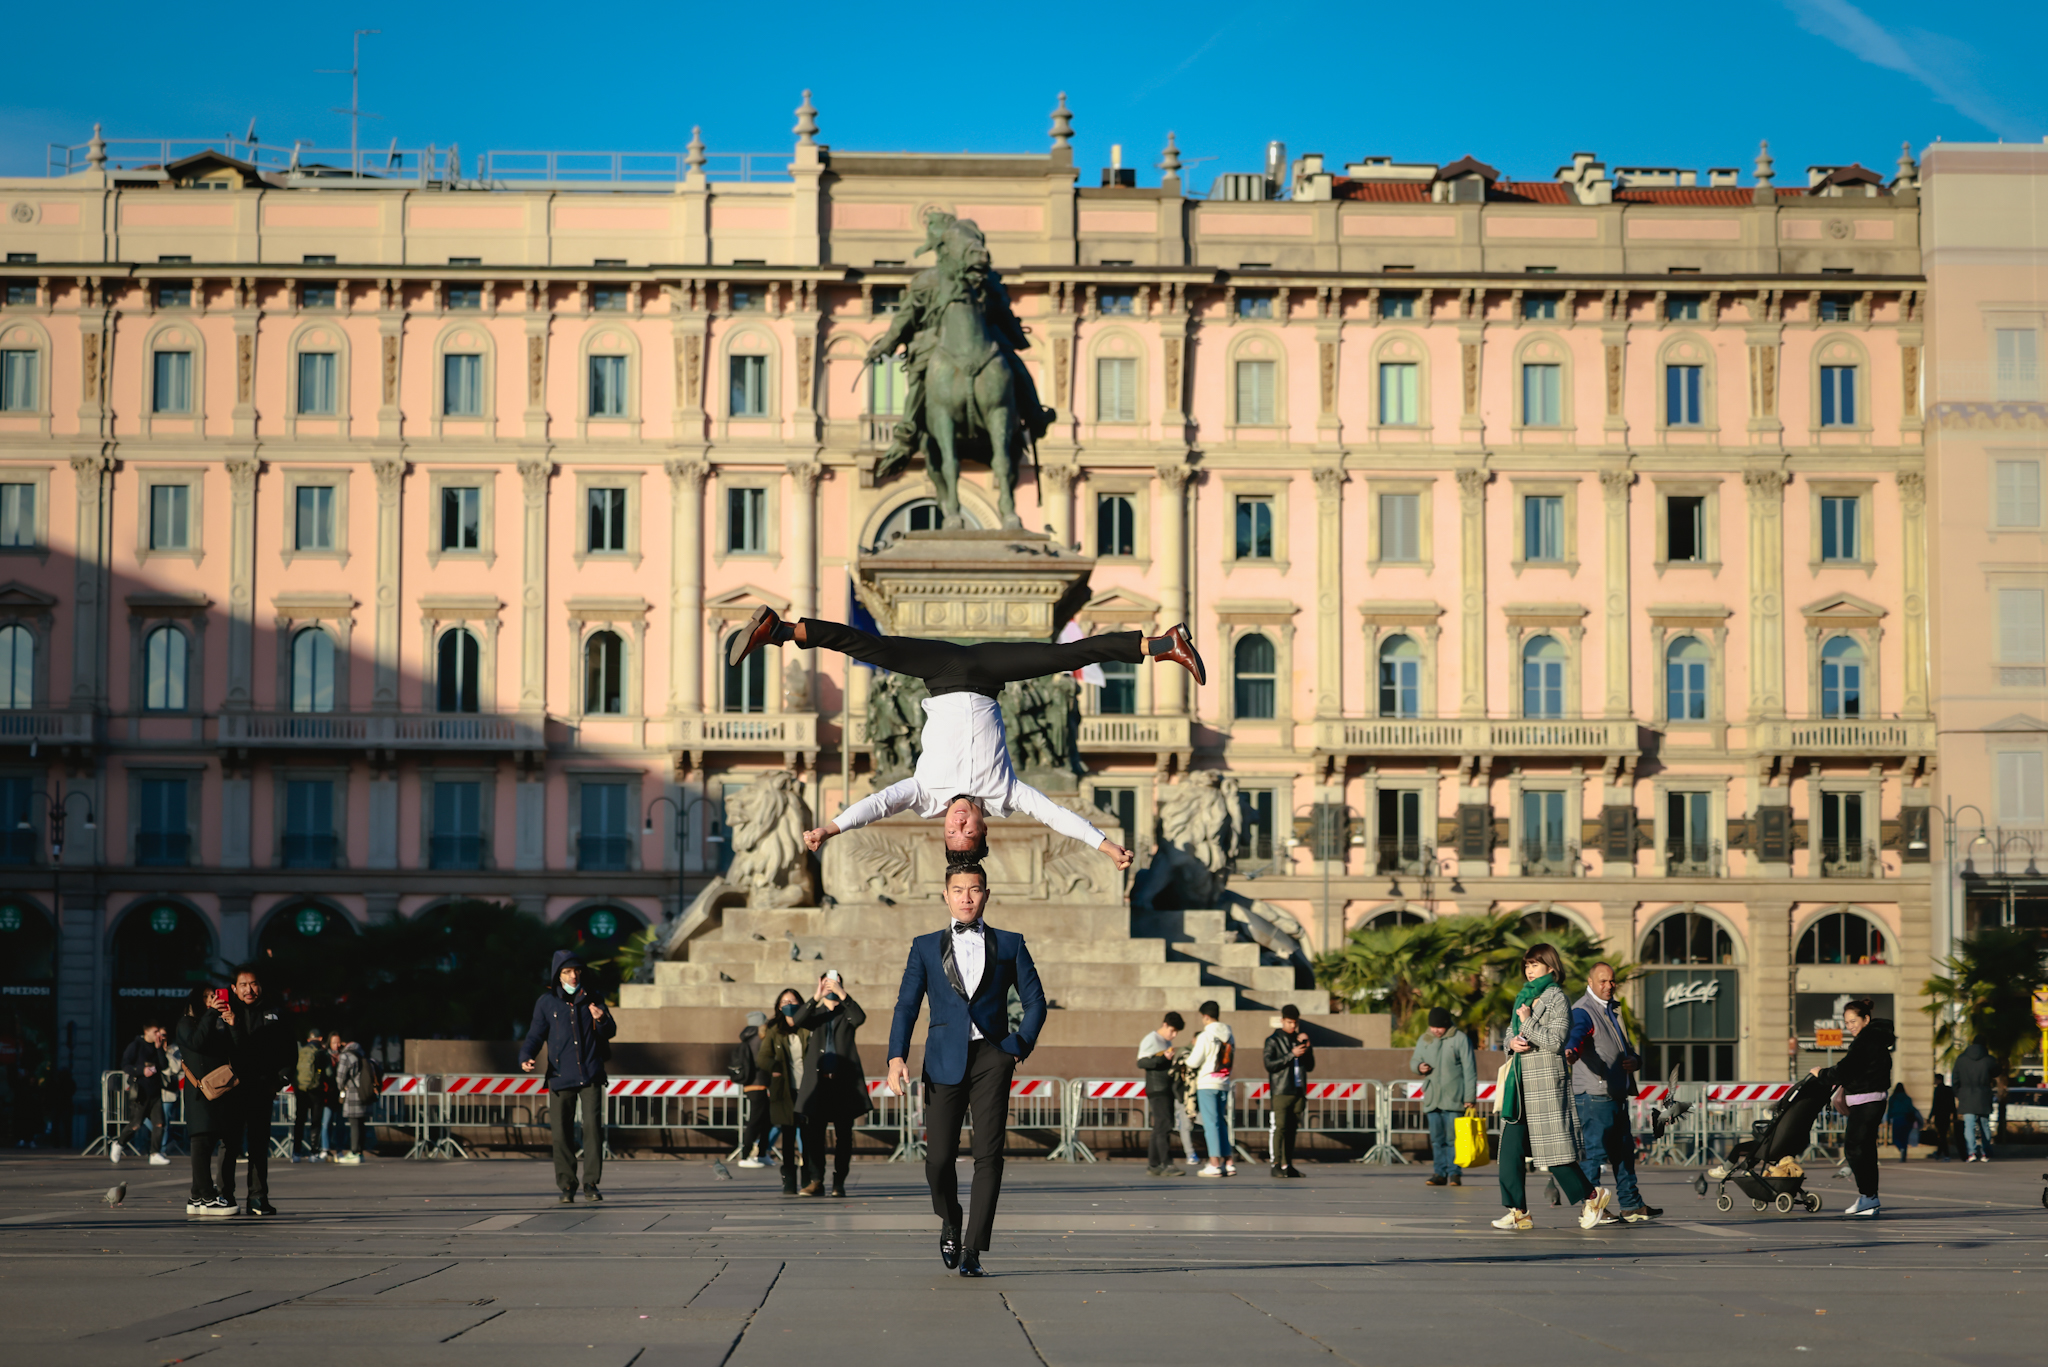 Quốc Cơ – Quốc Nghiệp tại Đài tưởng niệm 127 năm tuổi Vittorio Emanuele II nằm ở trung tâm quảng trường Piazza Del Duomo. Quảng trường này có niên đại 1.300 năm.